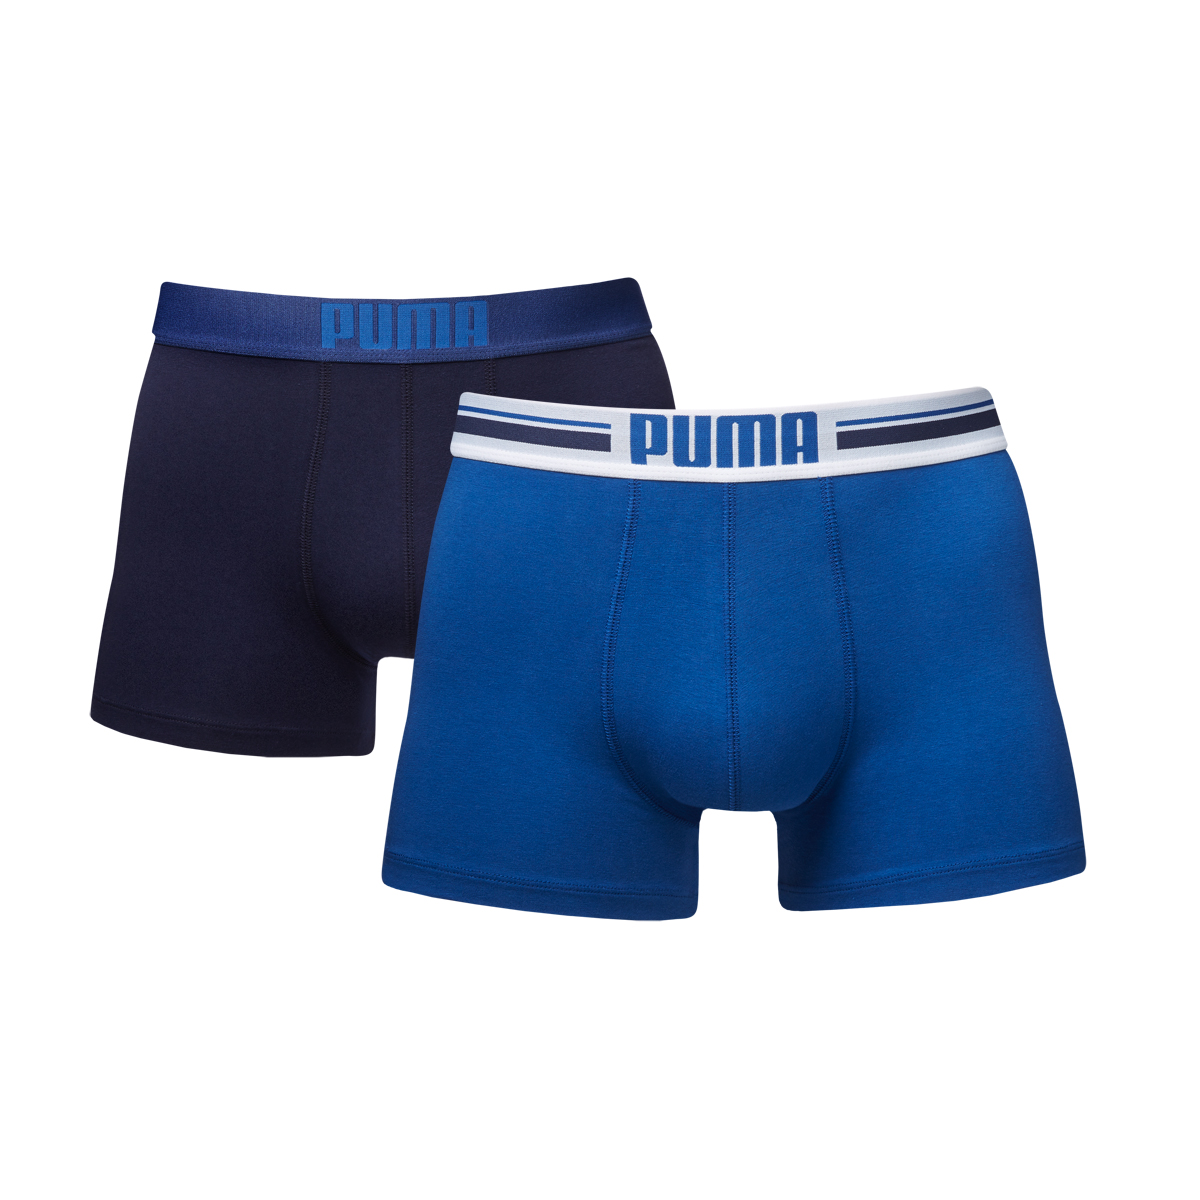 Трусы мужские Puma Placed Logo Boxer 2P, цвет: темно-синий, синий, 2 шт. 90651901. Размер M (46/48)